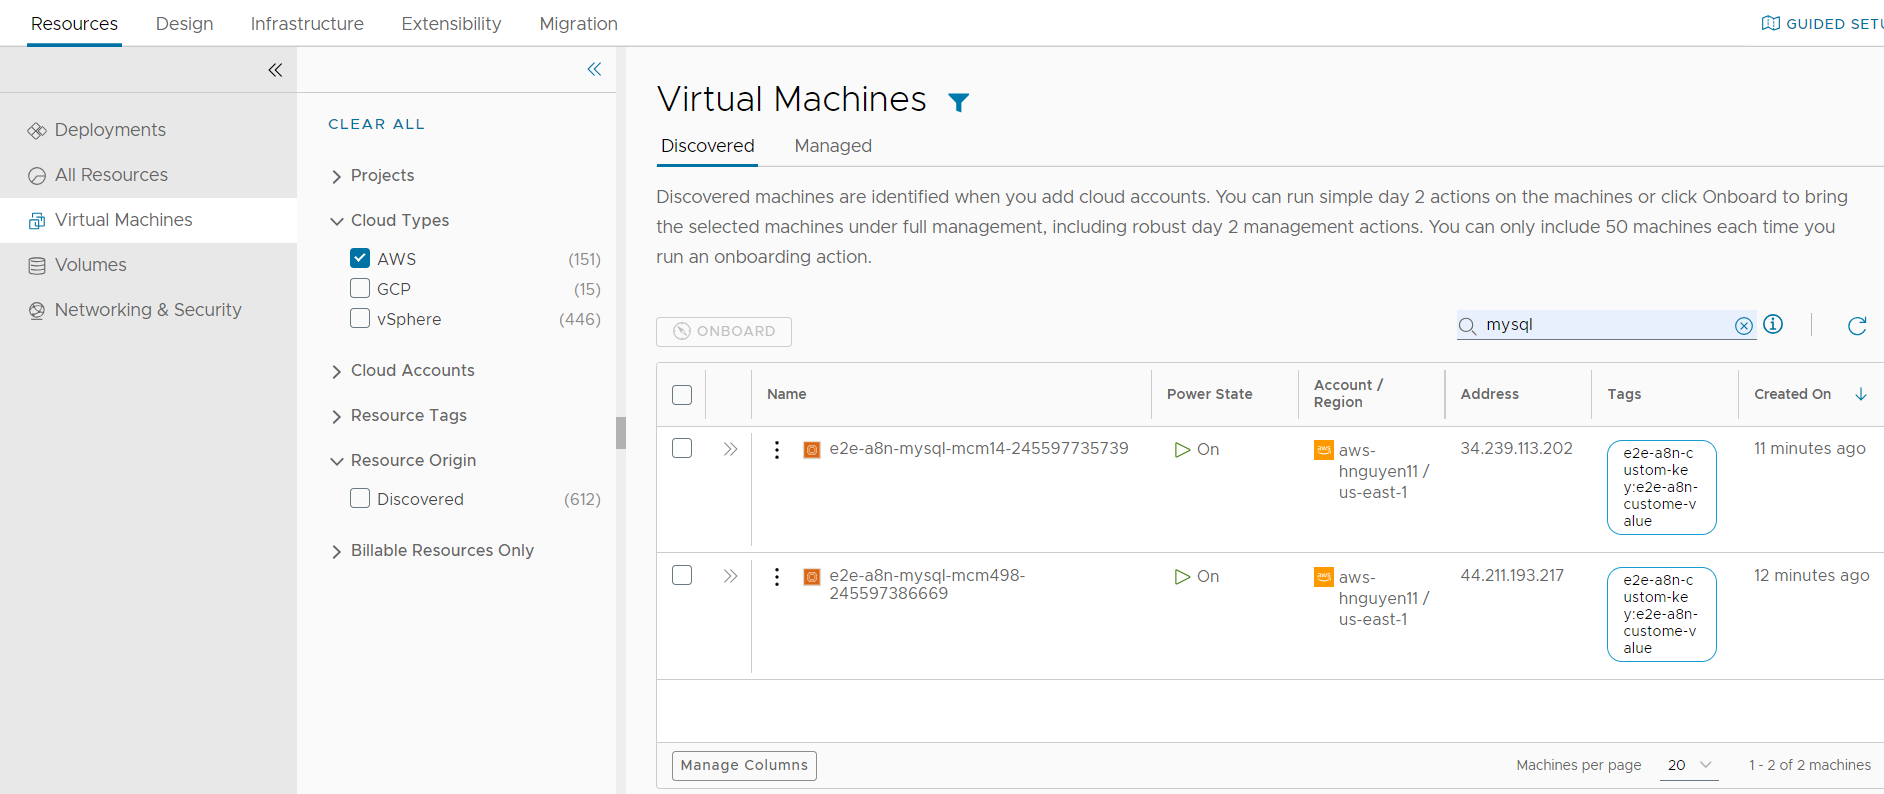 Capture d'écran de la page de machines virtuelles avec le filtre AWS et Découvert, et la recherche MySQL appliquée.